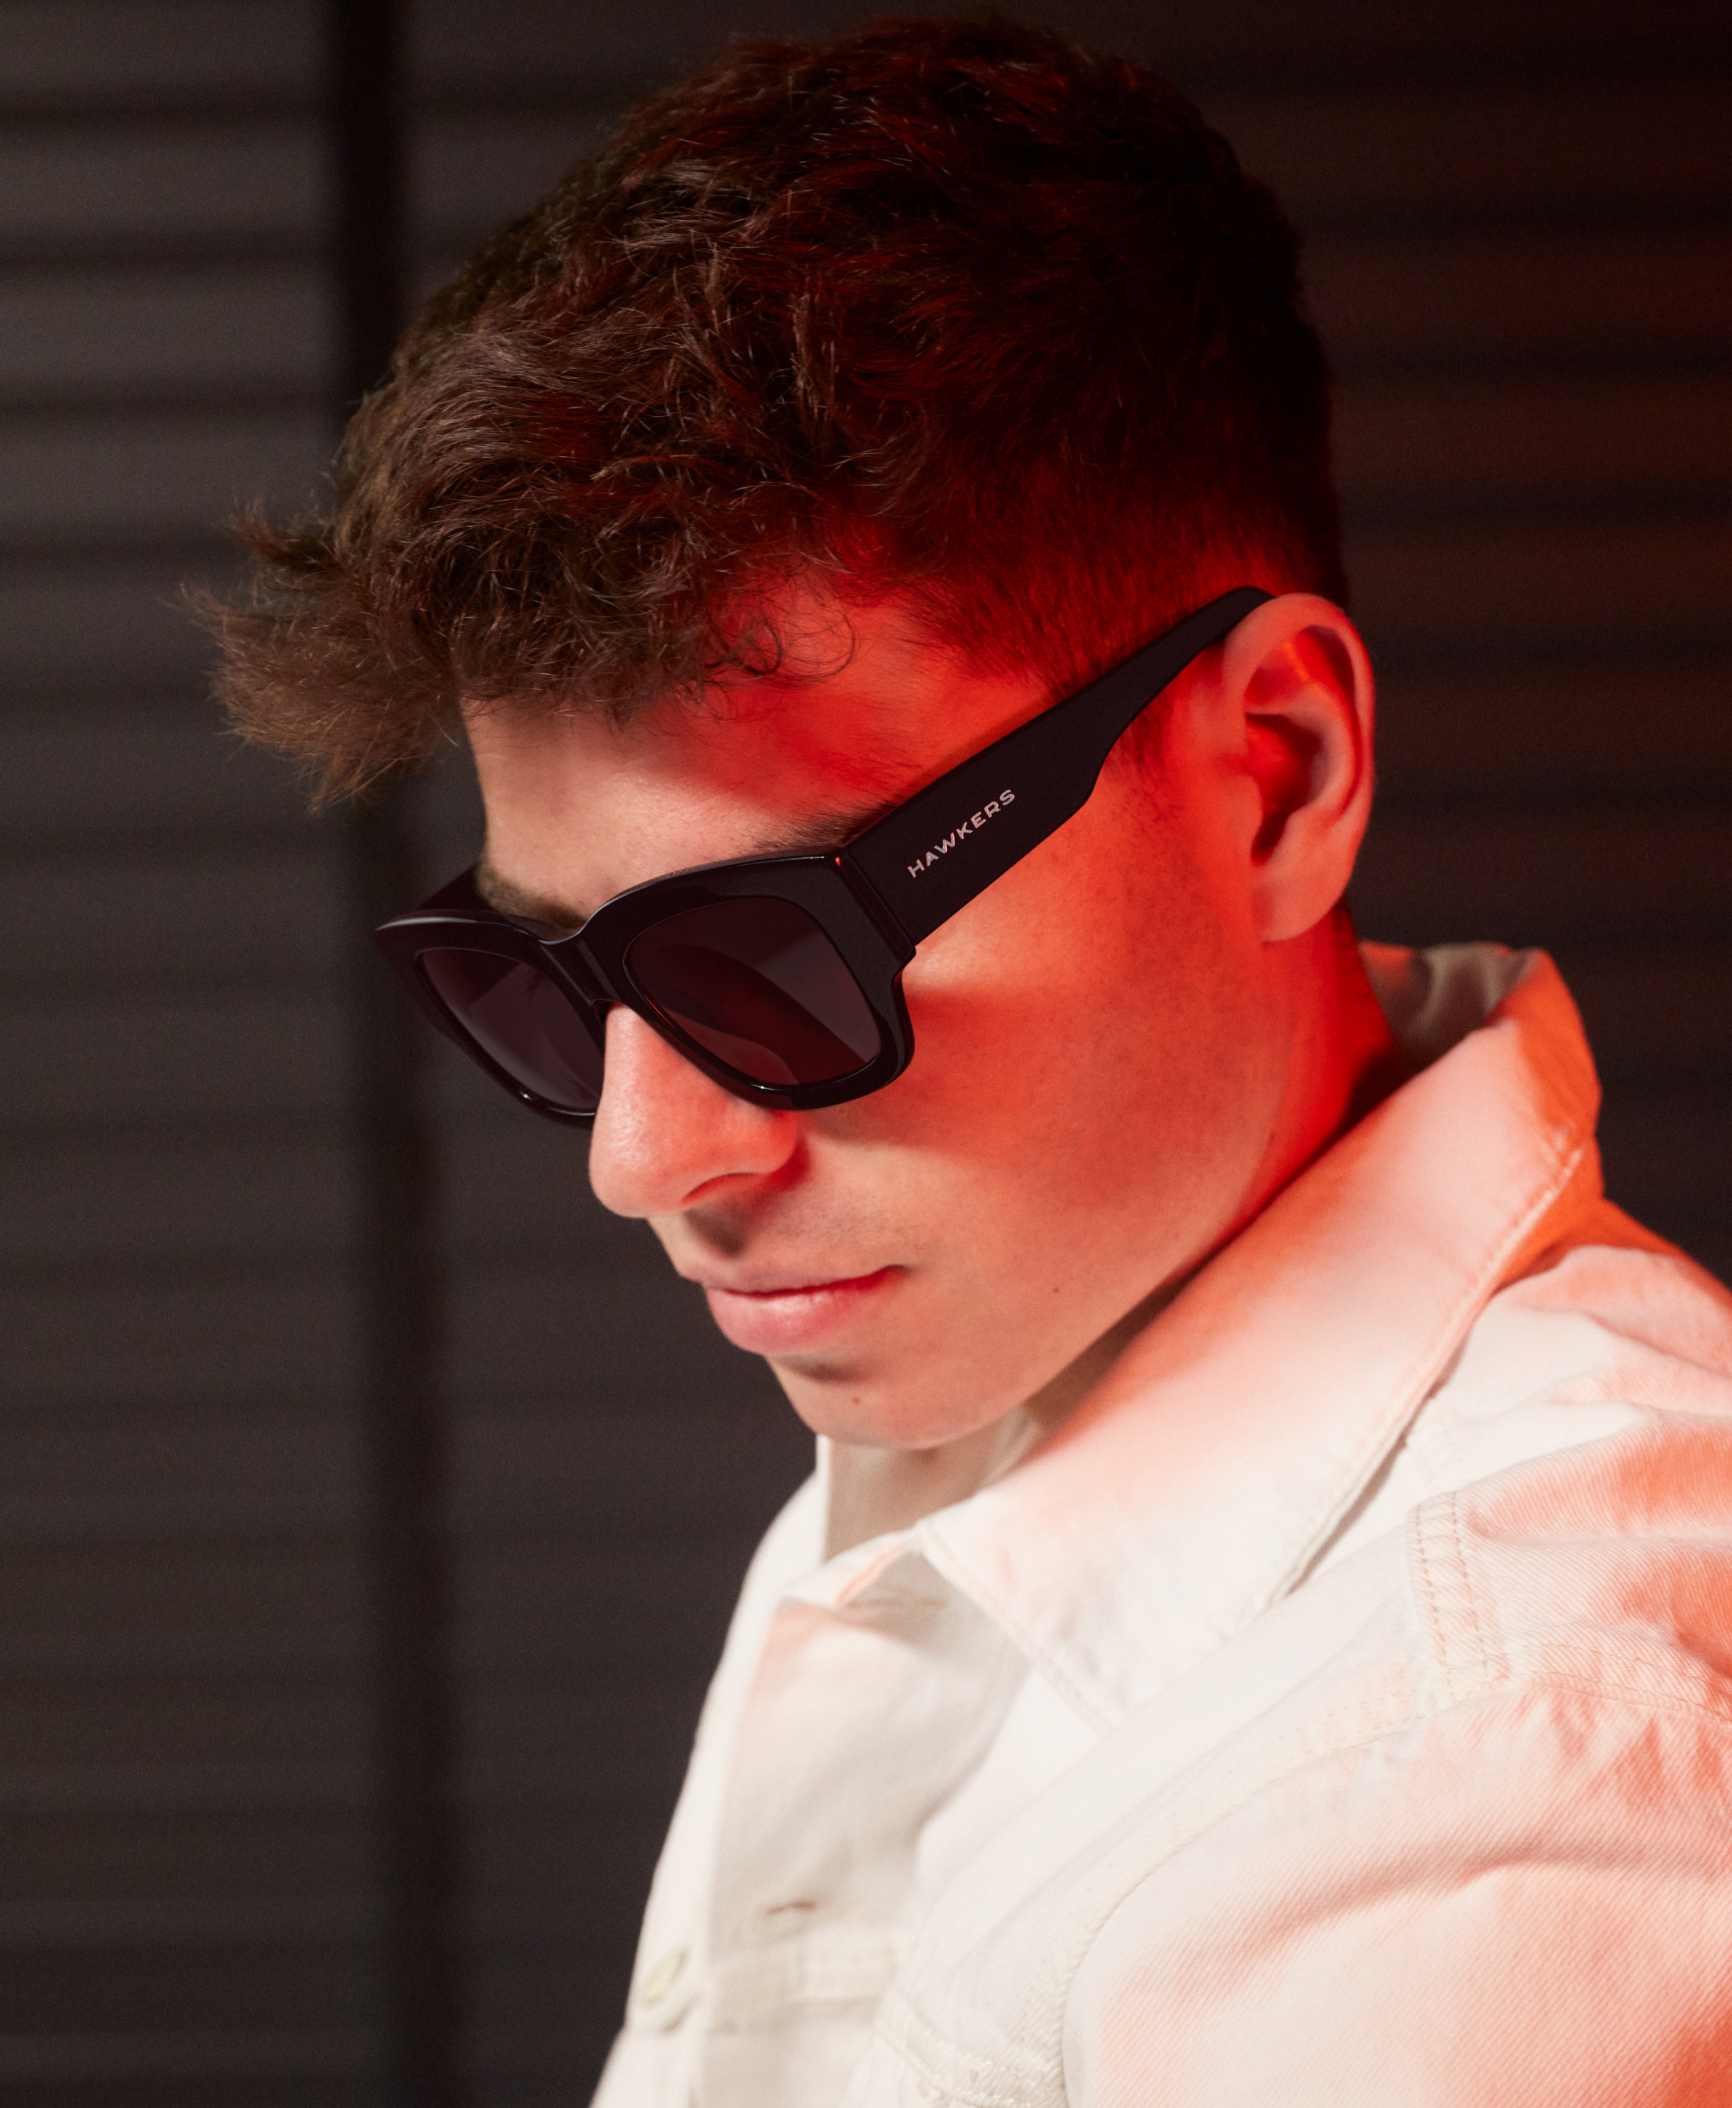 teenagere træk uld over øjnene Meningsløs Sunglasses Hawkers® Official Store